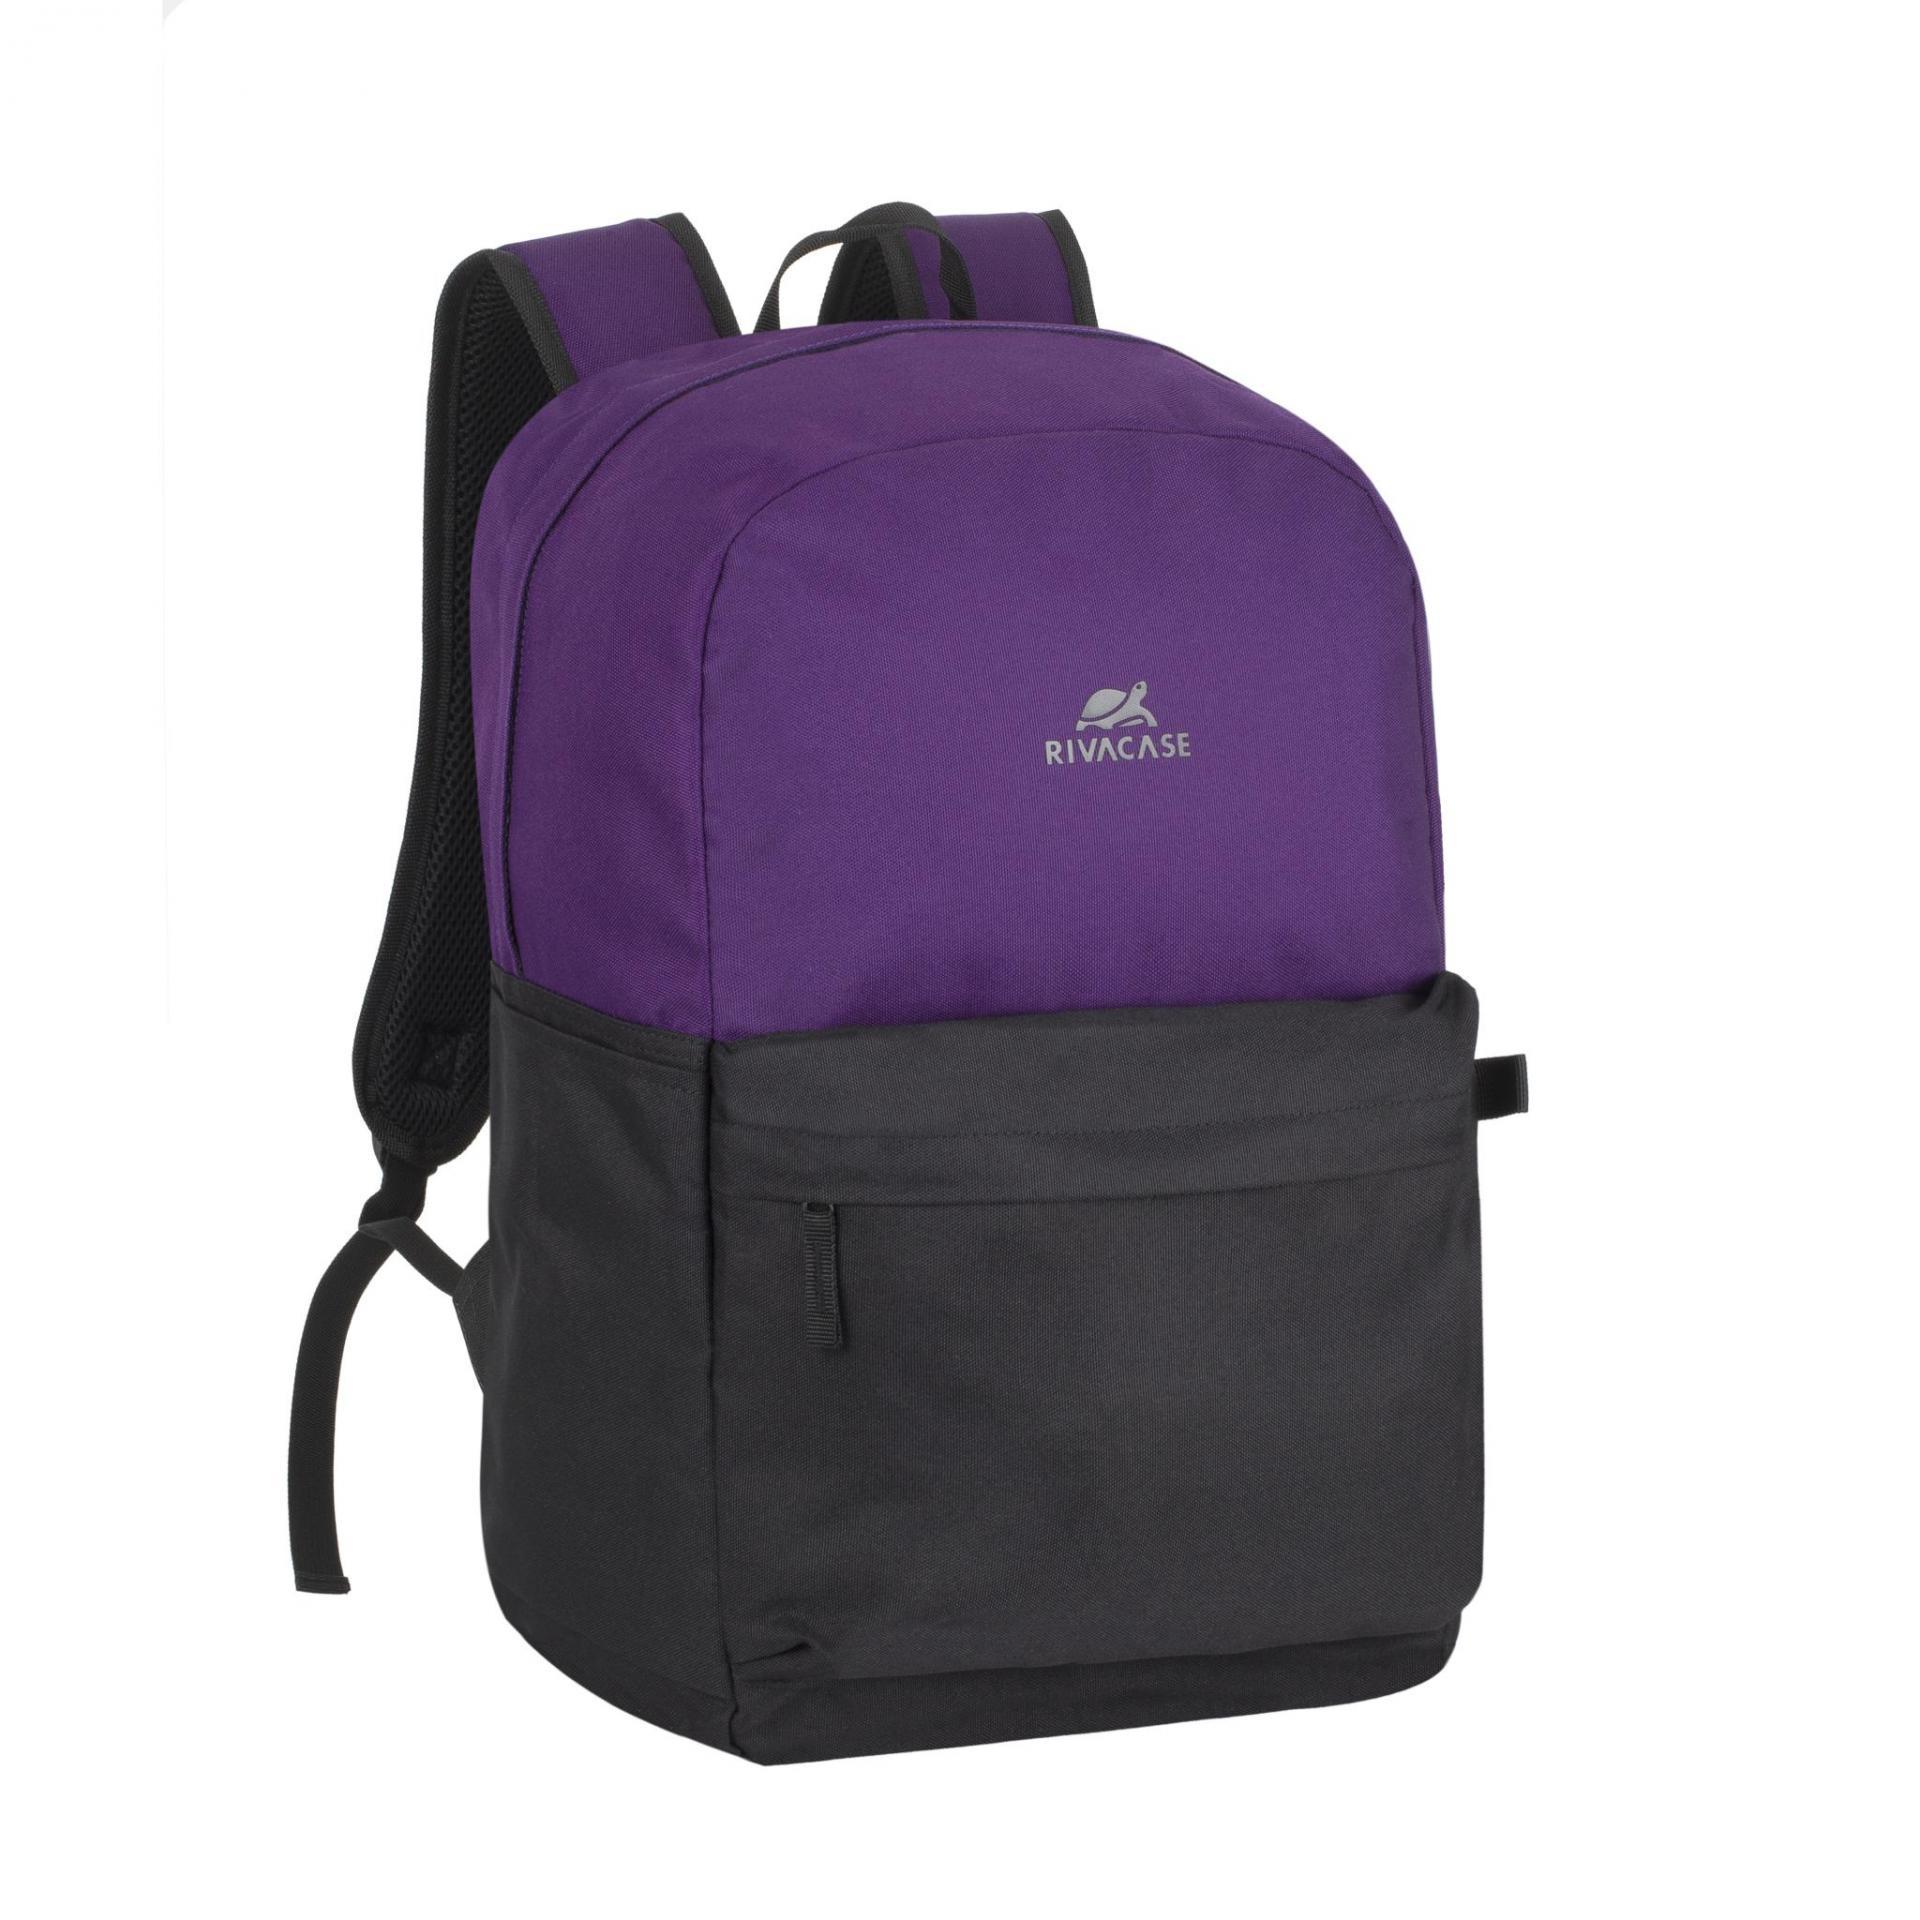 RIVACASE 5560 violet/black  backpack 15.6